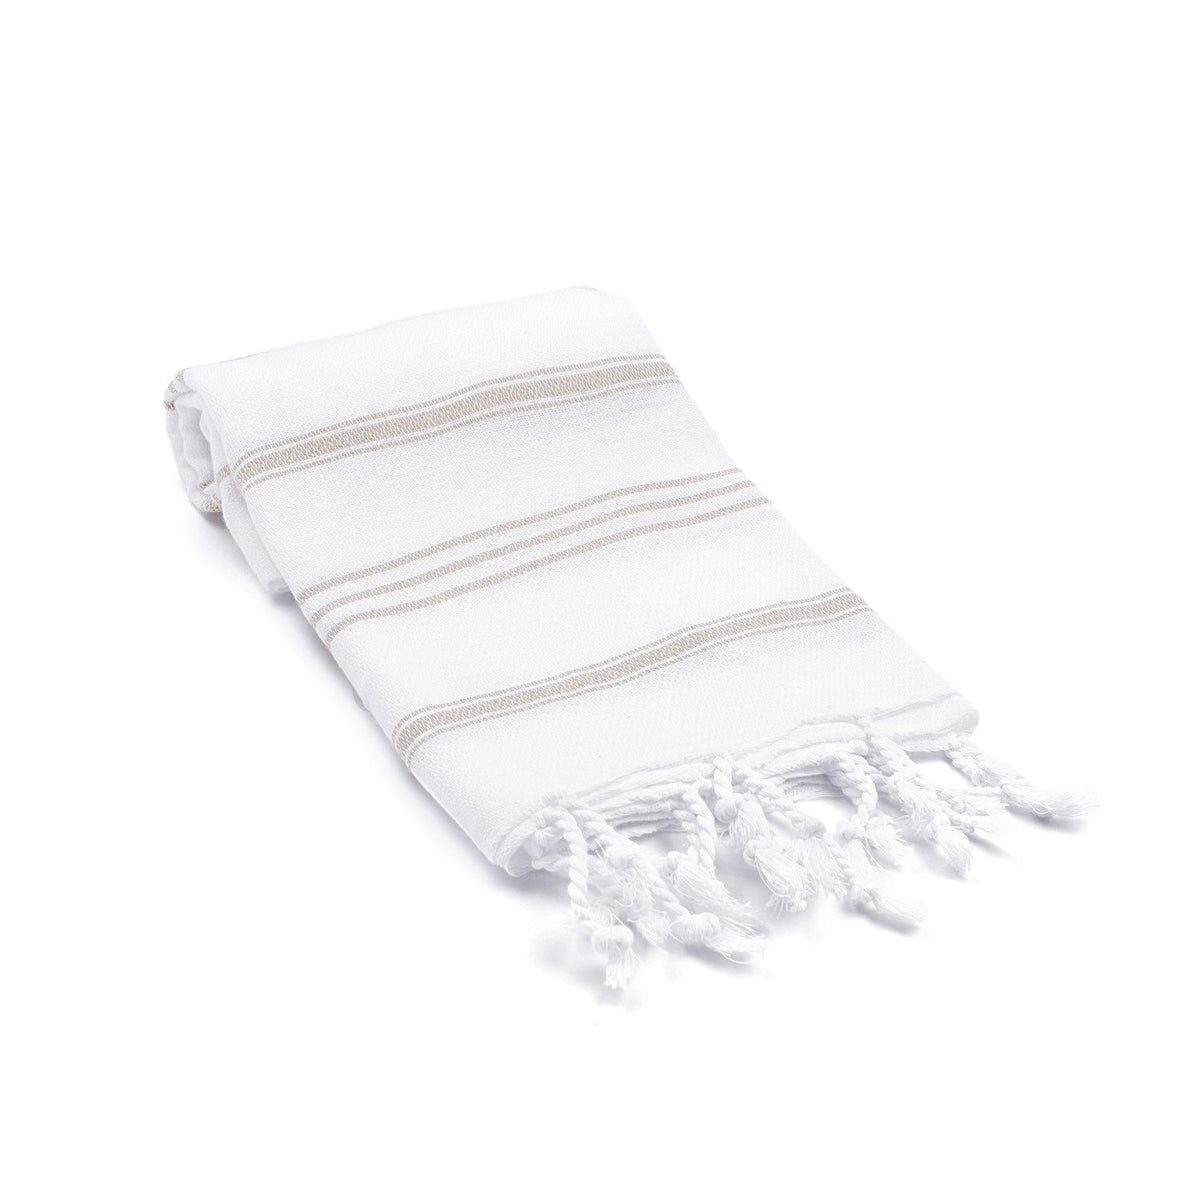 Datca Turkish Hand / Kitchen Towel